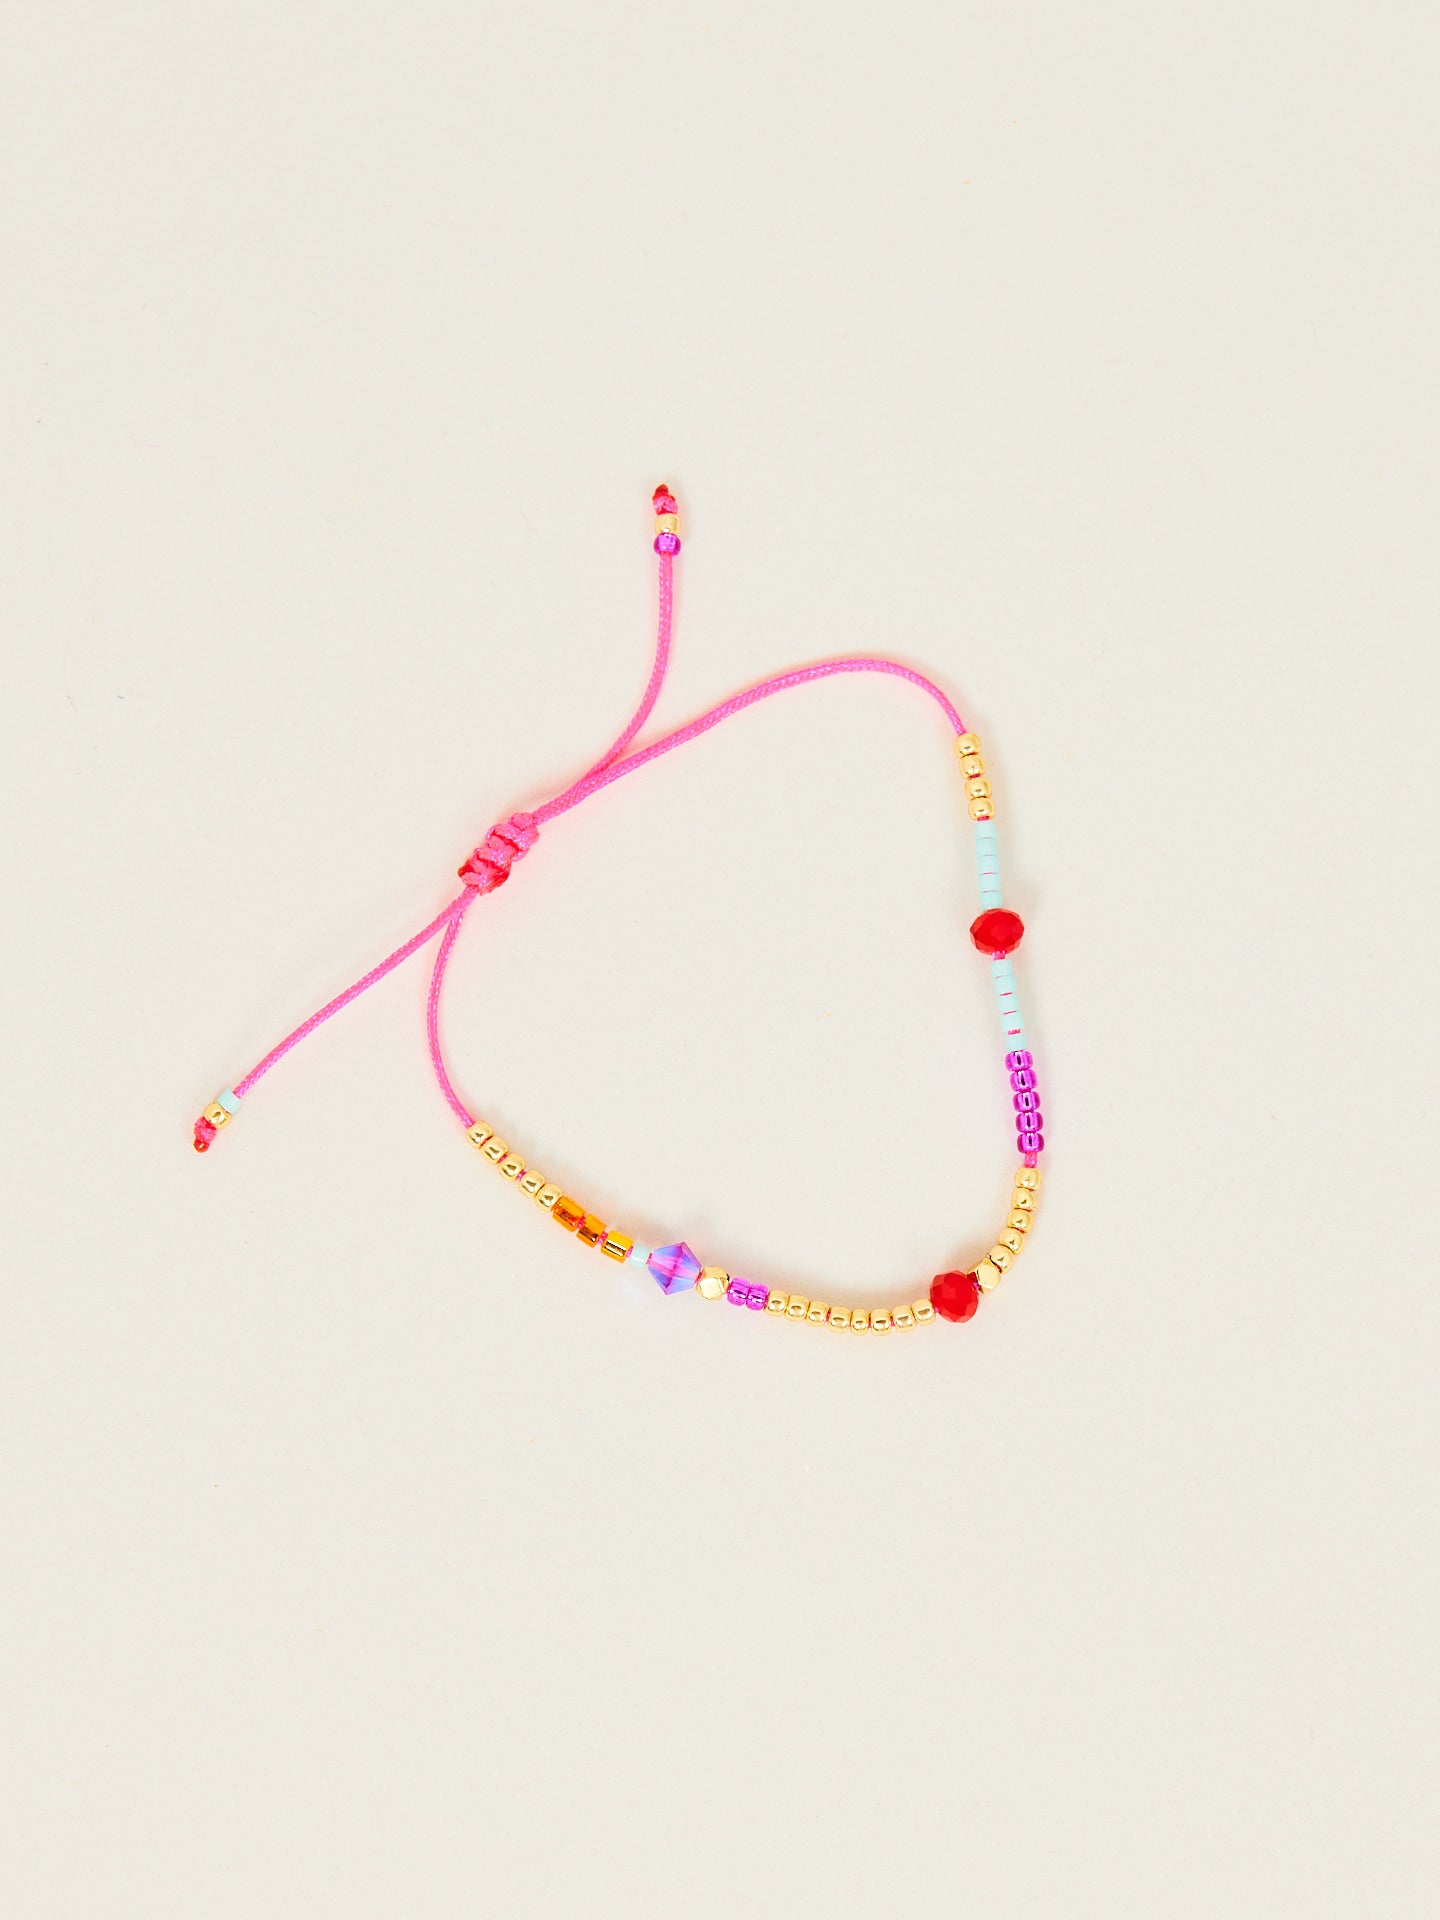 Kreatives Armband in bunten Farben mit einem pinken Bändchen.